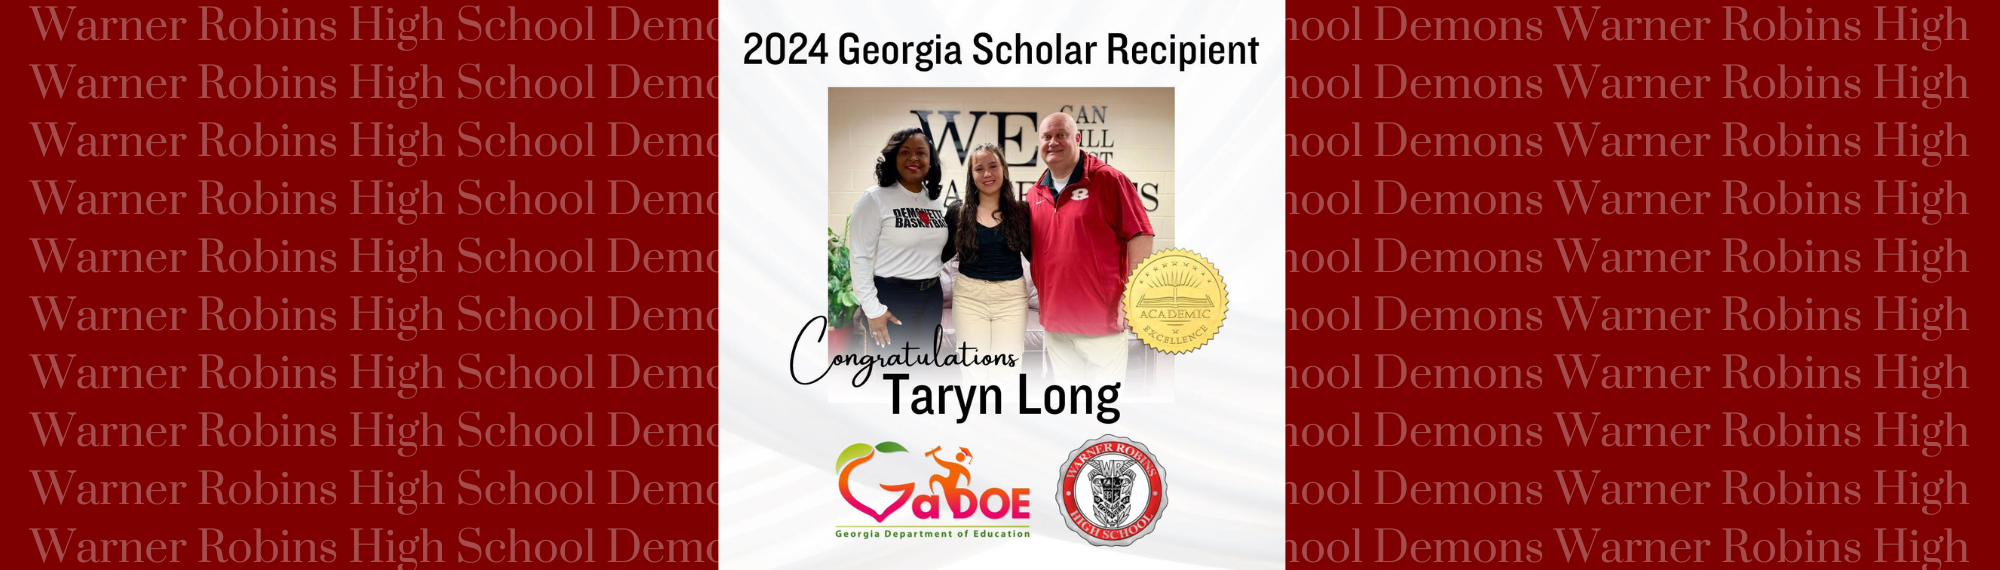 Georgia Scholar Recipient 2024